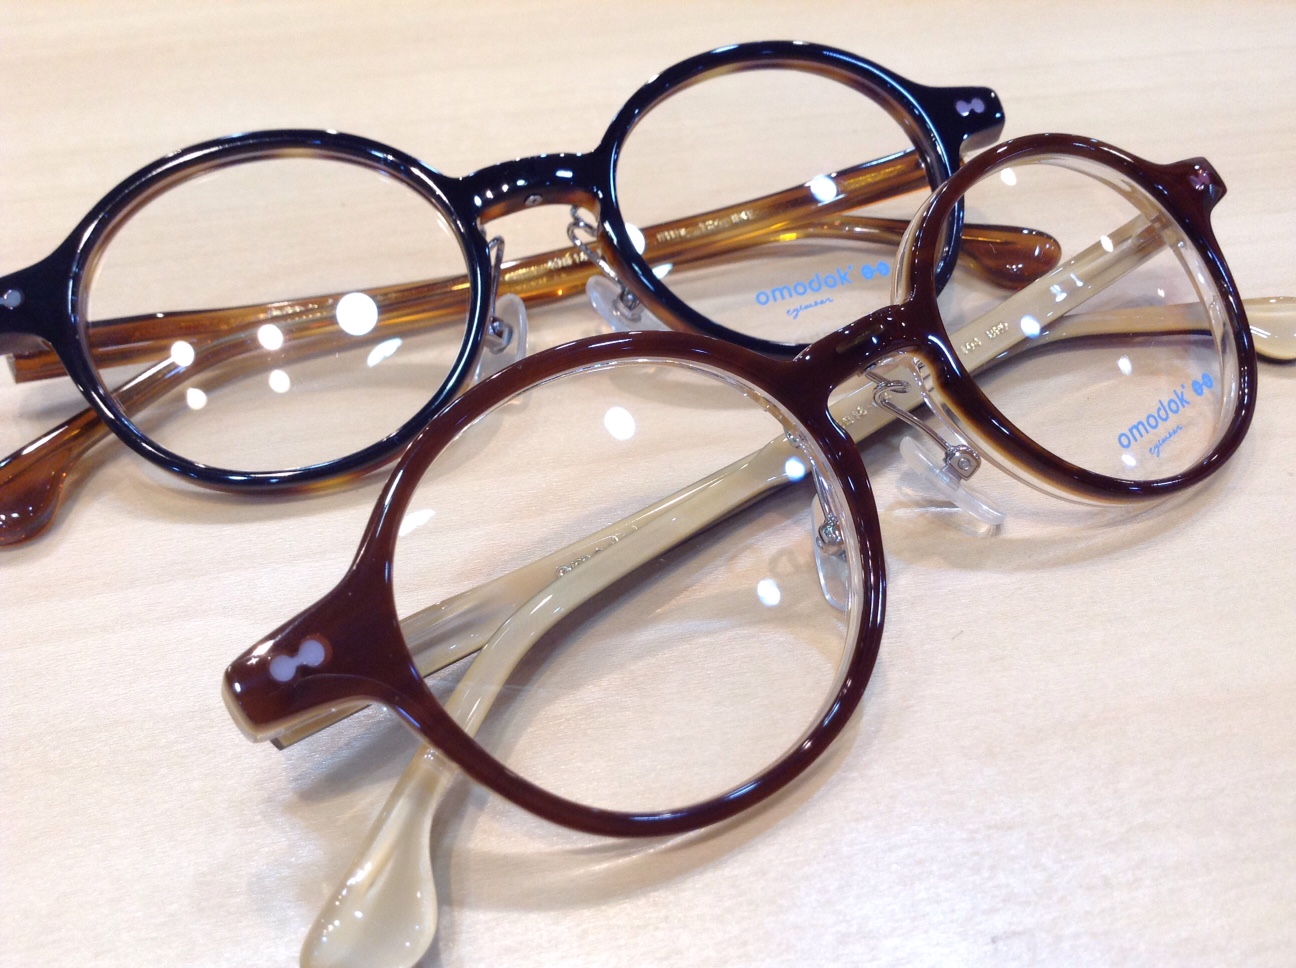 オモドックこどもめがねご紹介します 春の出会いの季節にお子様に新たなメガネの出会いをさせてみませんか 飯塚 田川のメガネ店 メガネのサトー